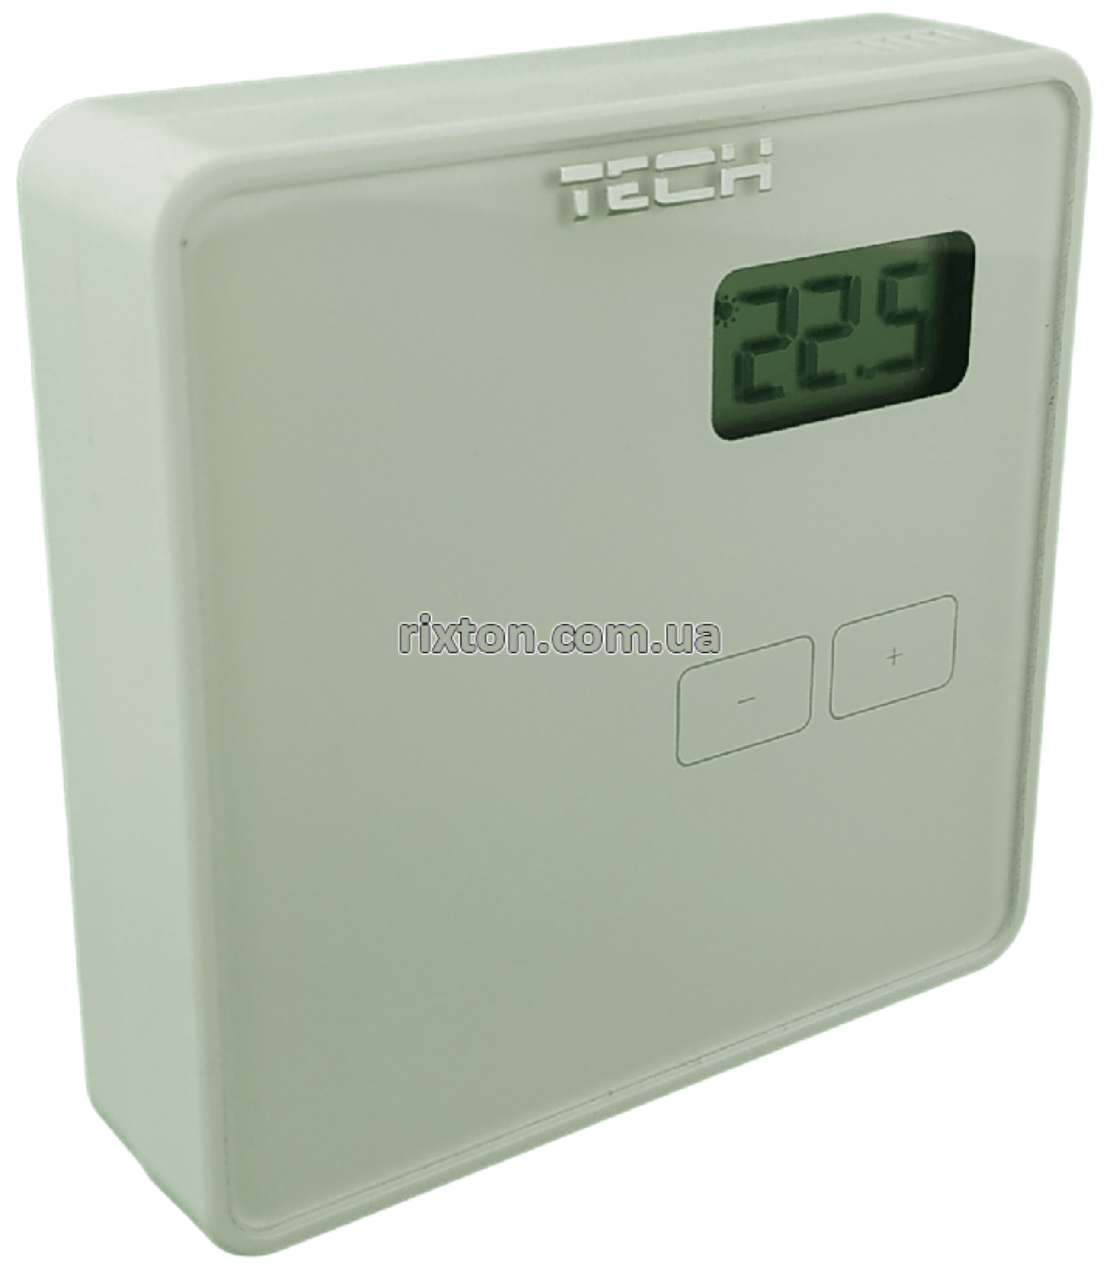 Комнатный регулятор температуры Tech ST-294-v1 (белый)